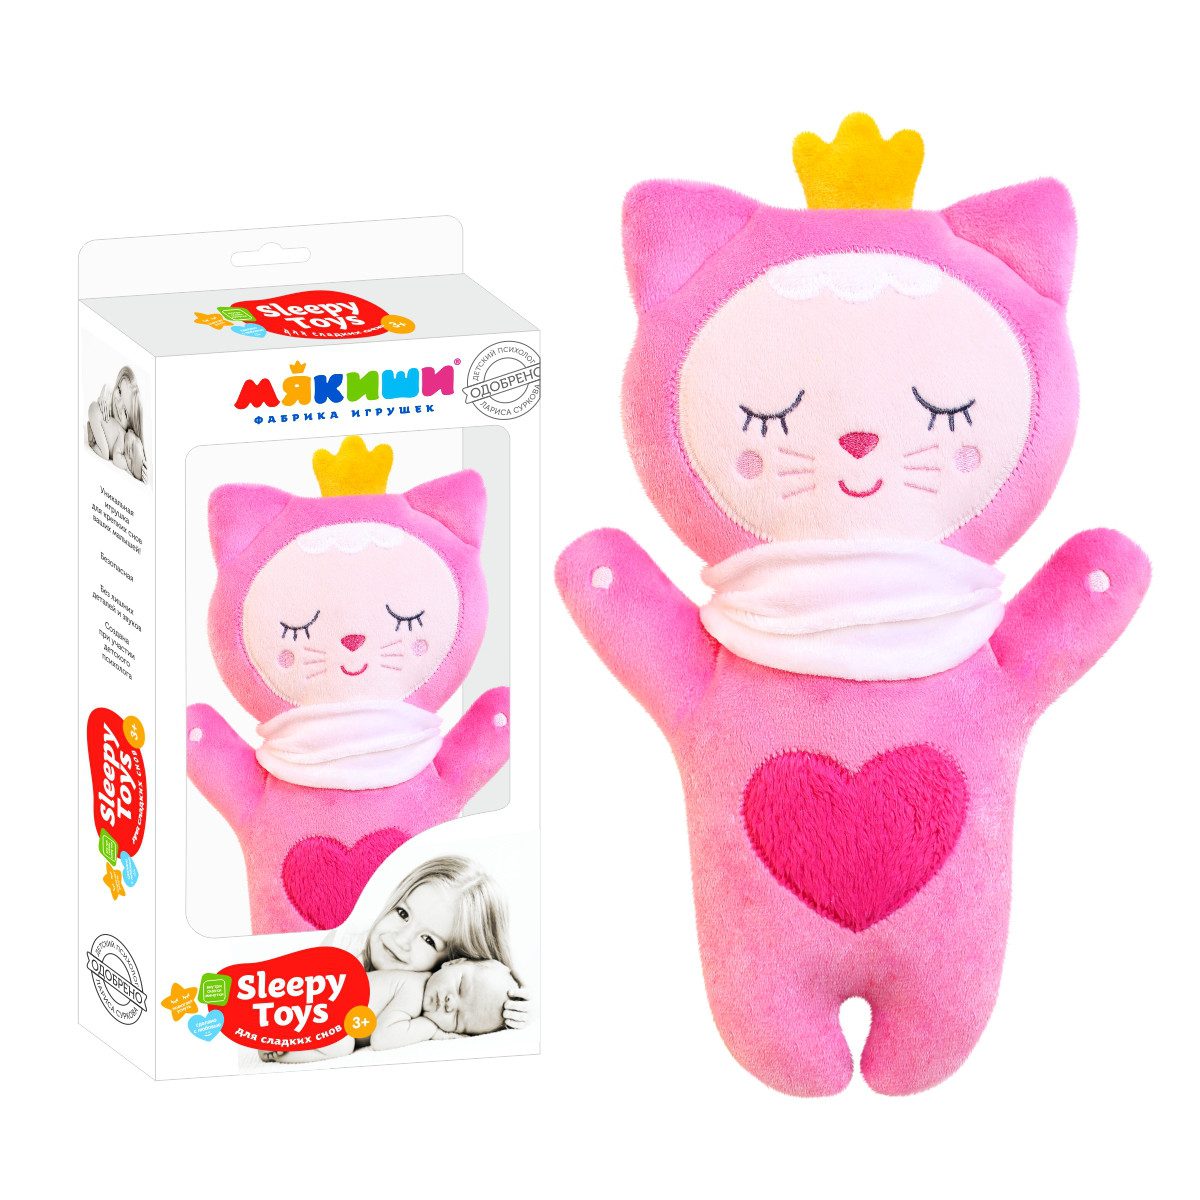 Мякиши "Sleepy Toys" Мягкая игрушка для сладких снов - Котёнок